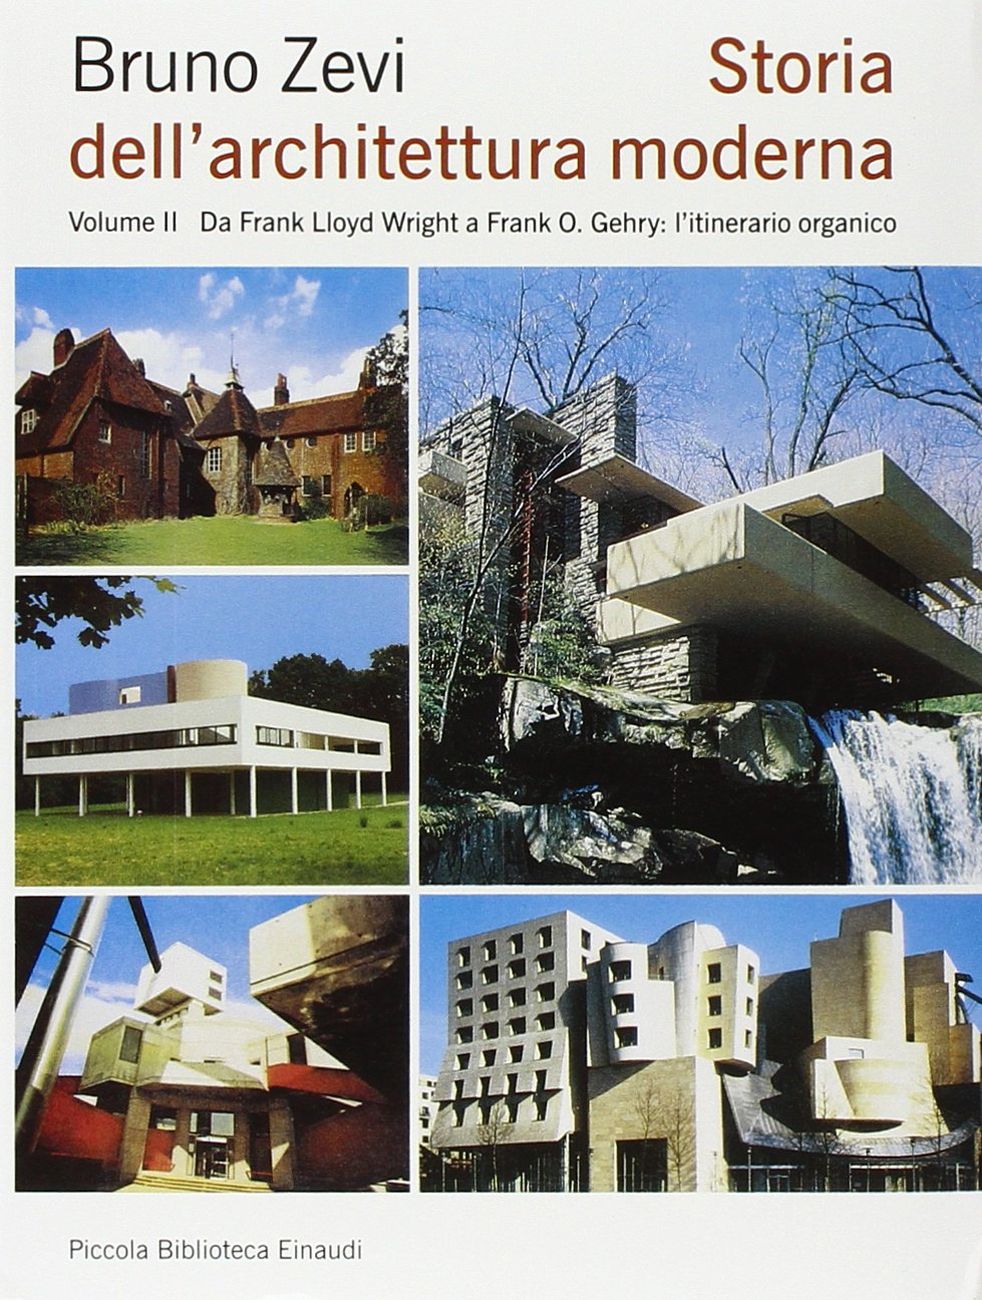 Bruno Zevi, Storia dell'architettura moderna. Vol. 2 (Einaudi, Torino 1996)